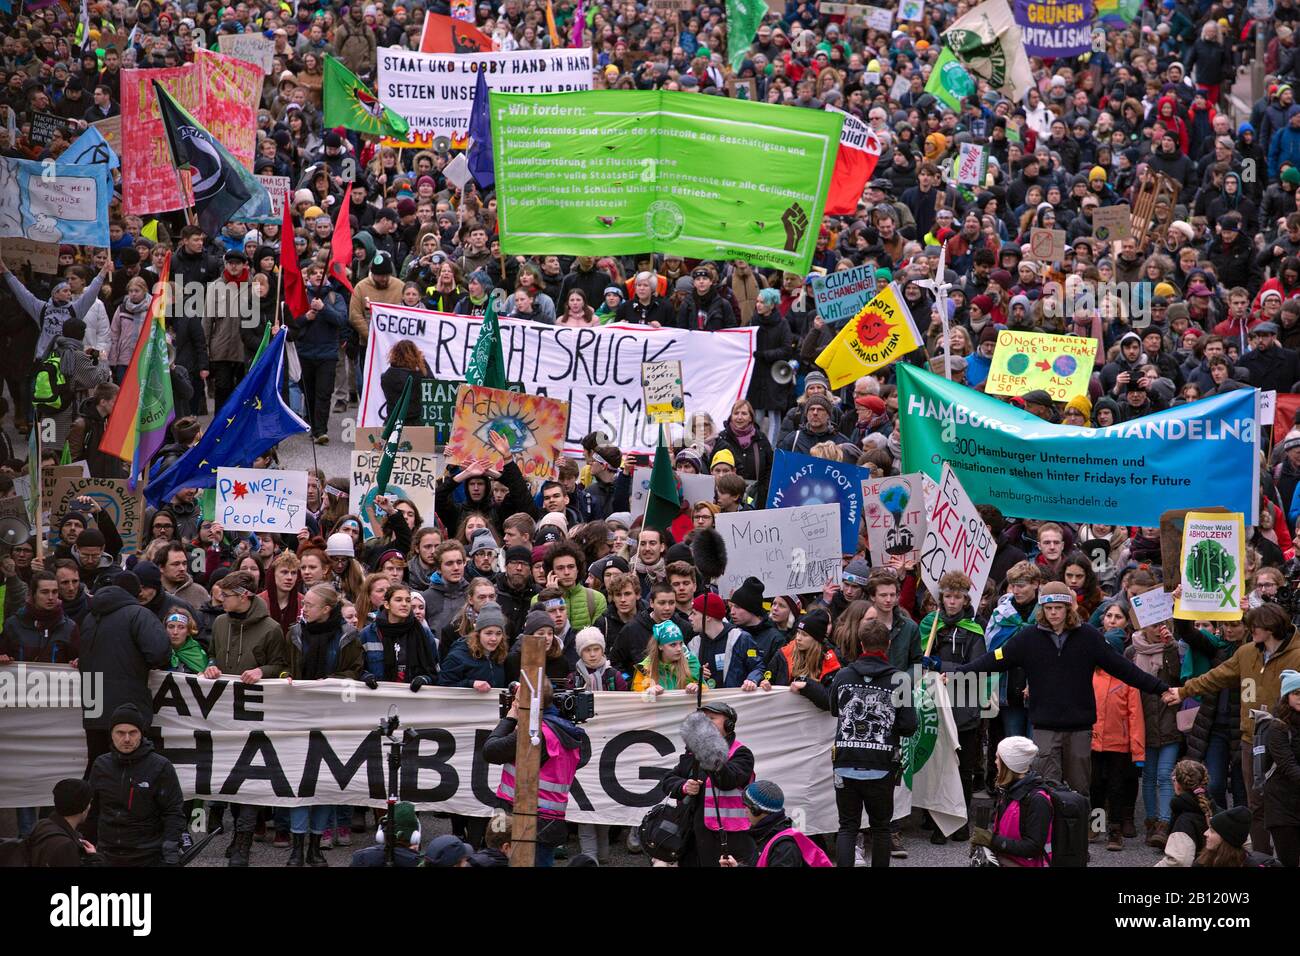 GRETA Thunberg, au centre avant, le vendredi, Pour Une Future manifestation à Hambourg, en Allemagne, le 21 février 2020 Banque D'Images